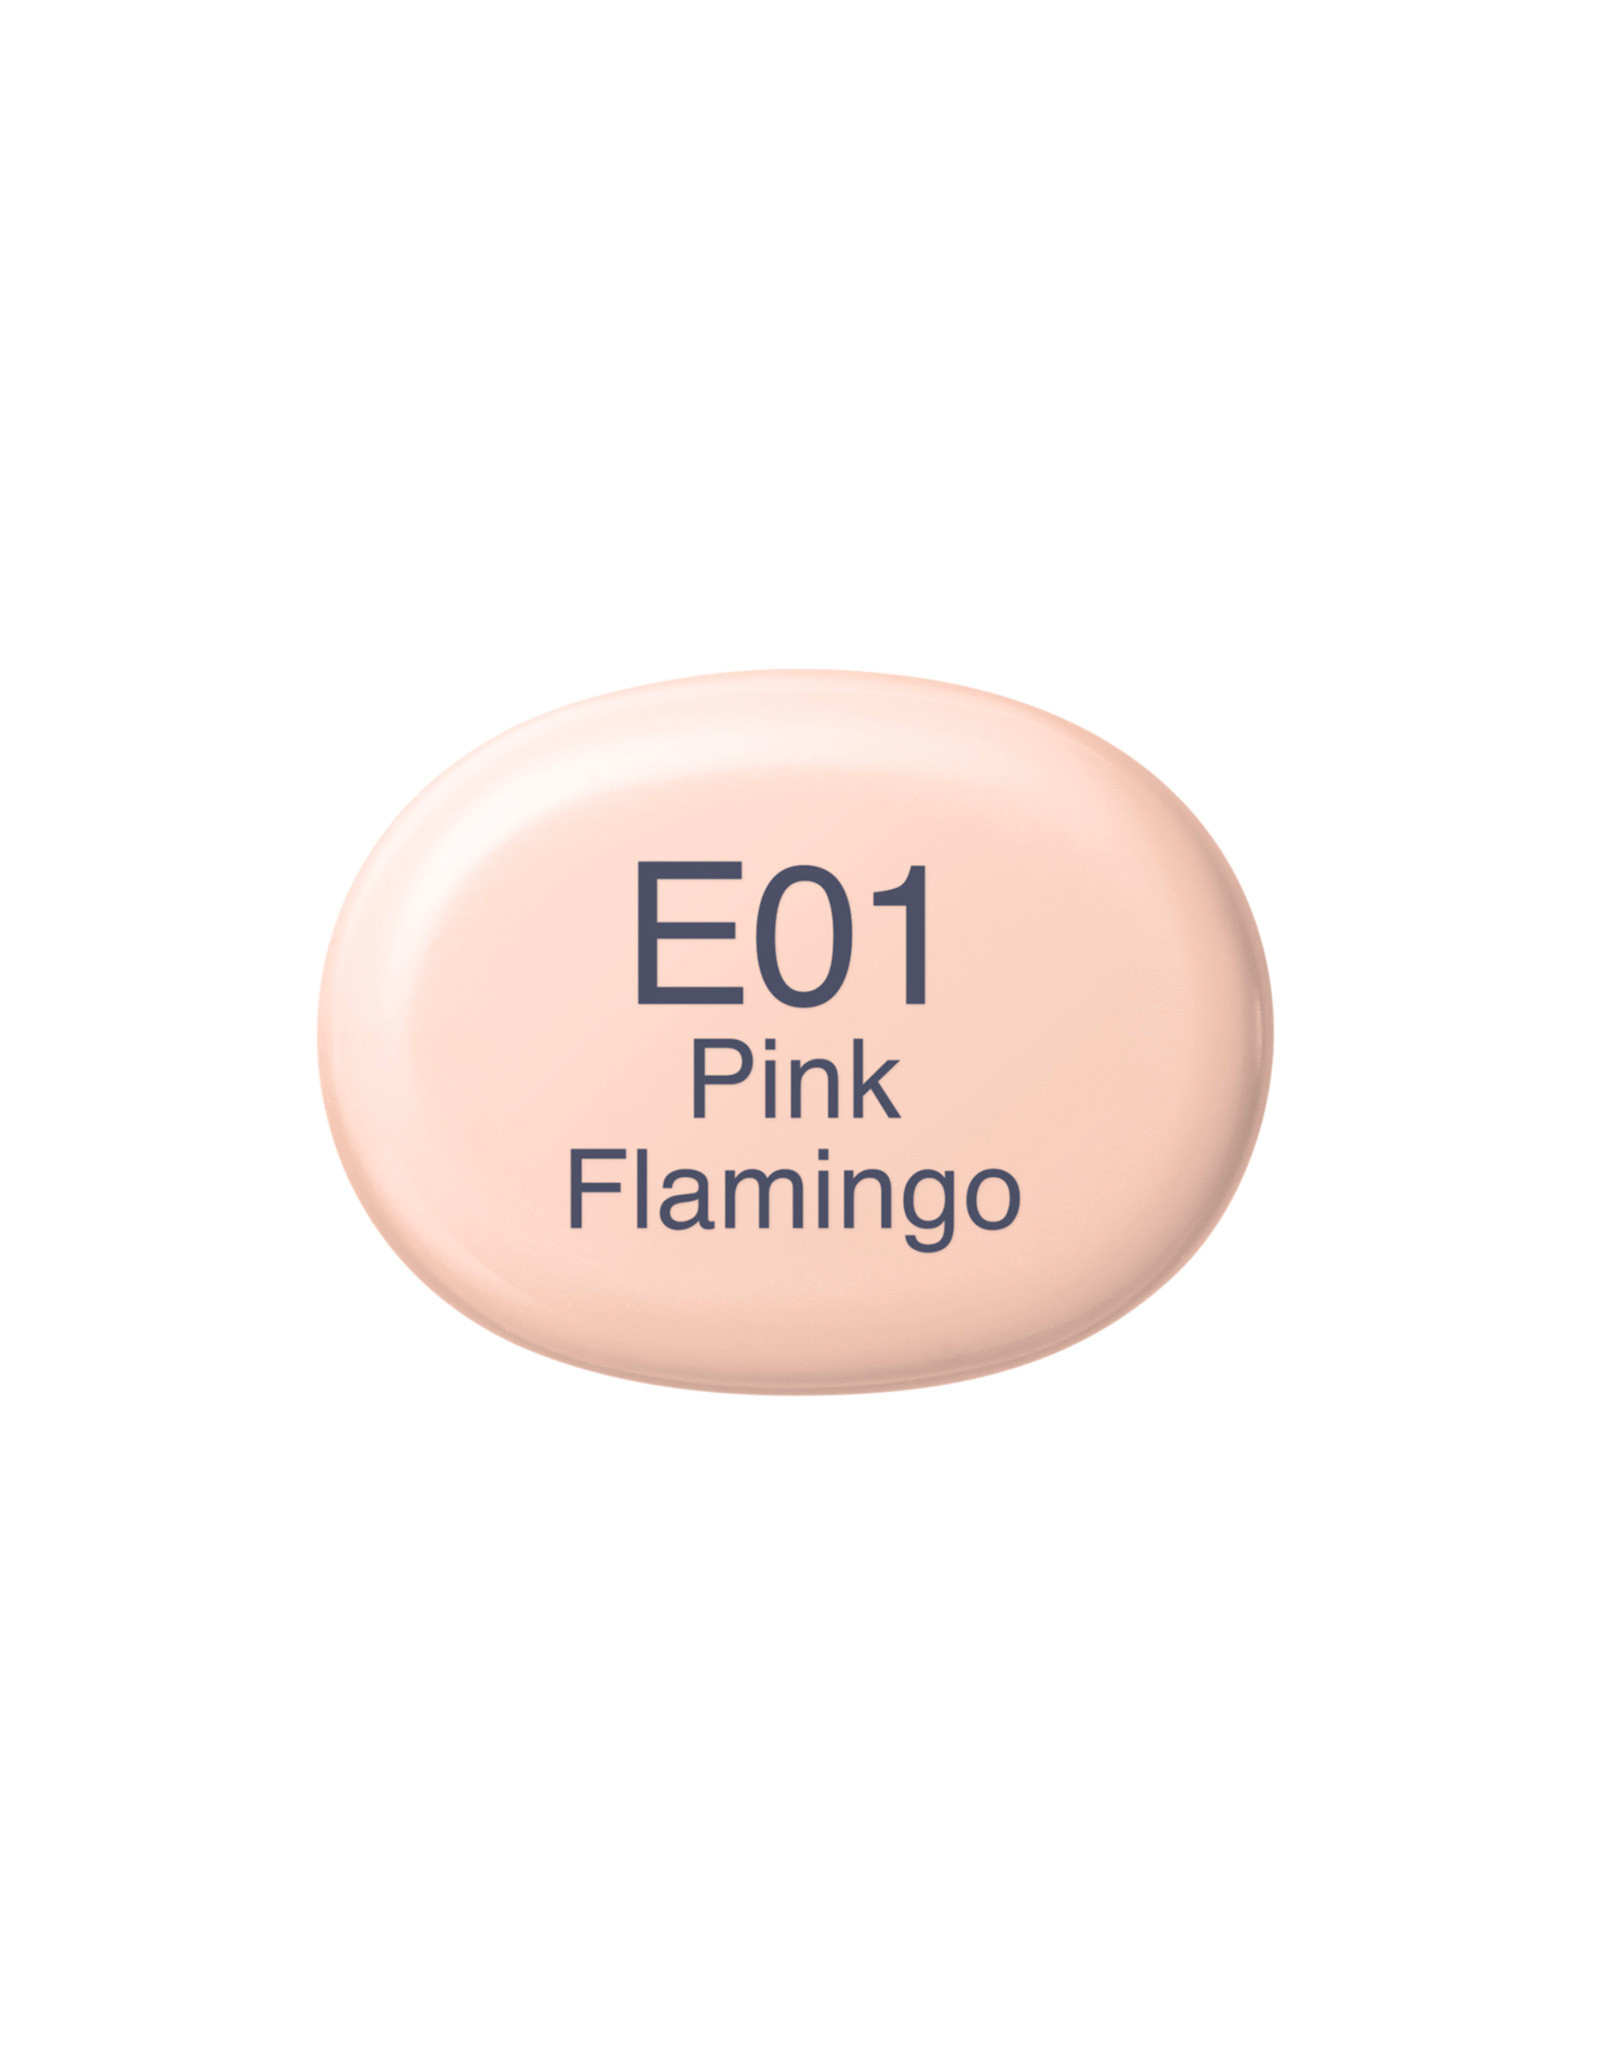 COPIC COPIC Sketch Marker E01 Pink Flamingo